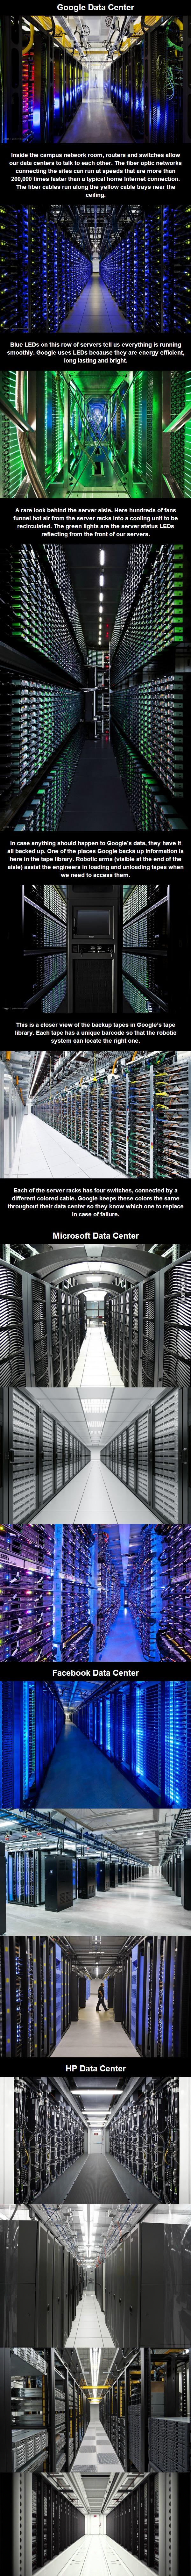 Google, Microsoft, Facebook, HP data centers - Yago Uribe